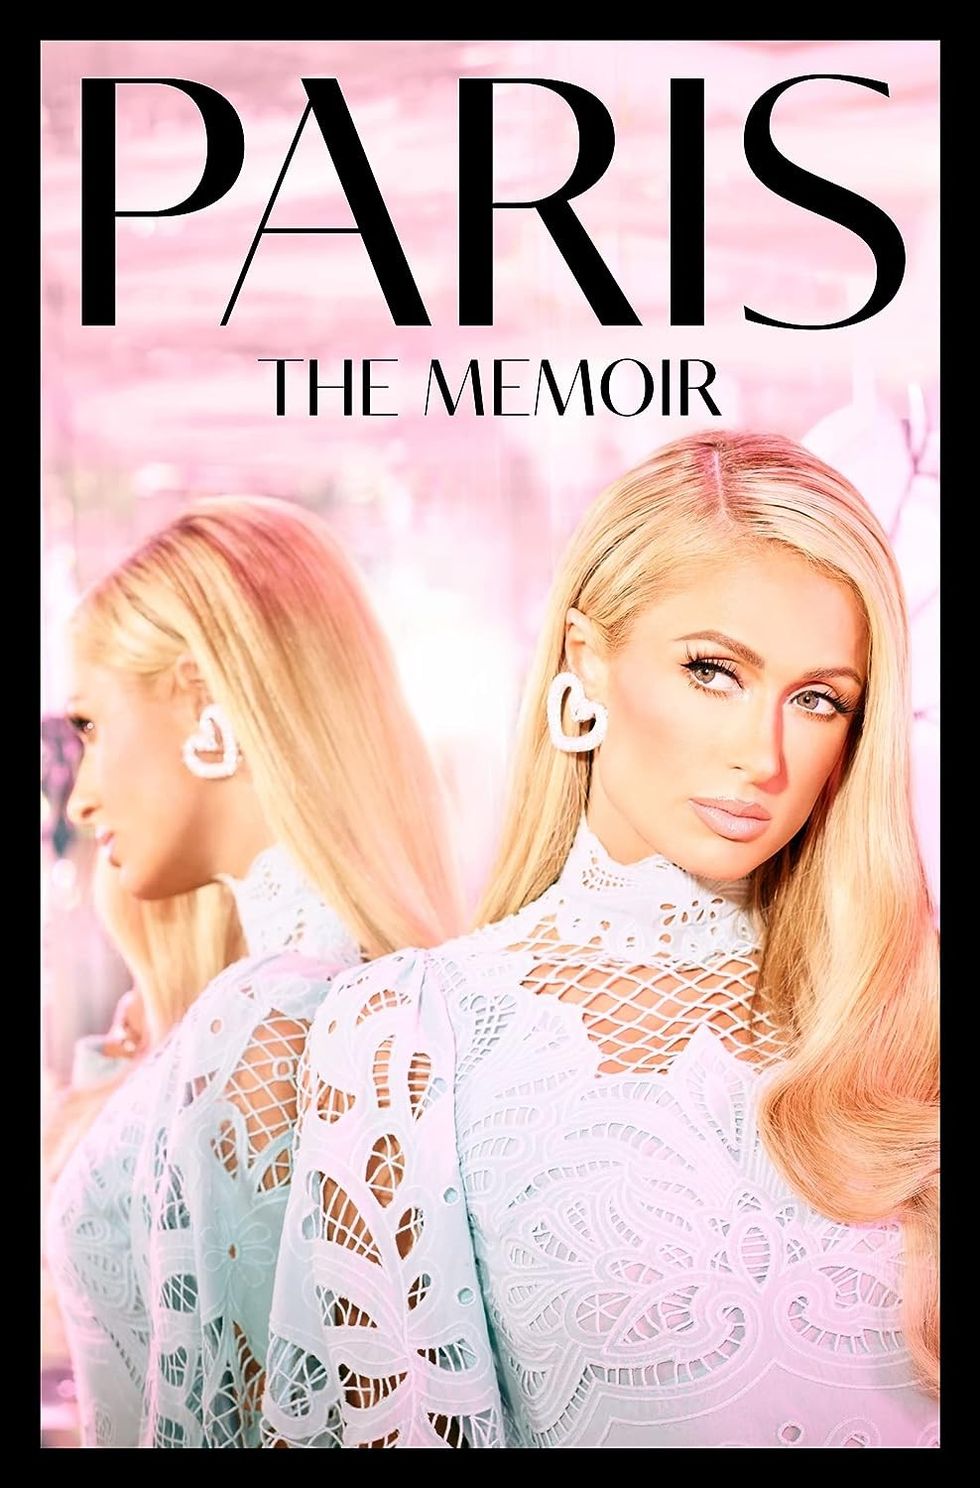 "Paris: The Memoir" by Paris Hilton